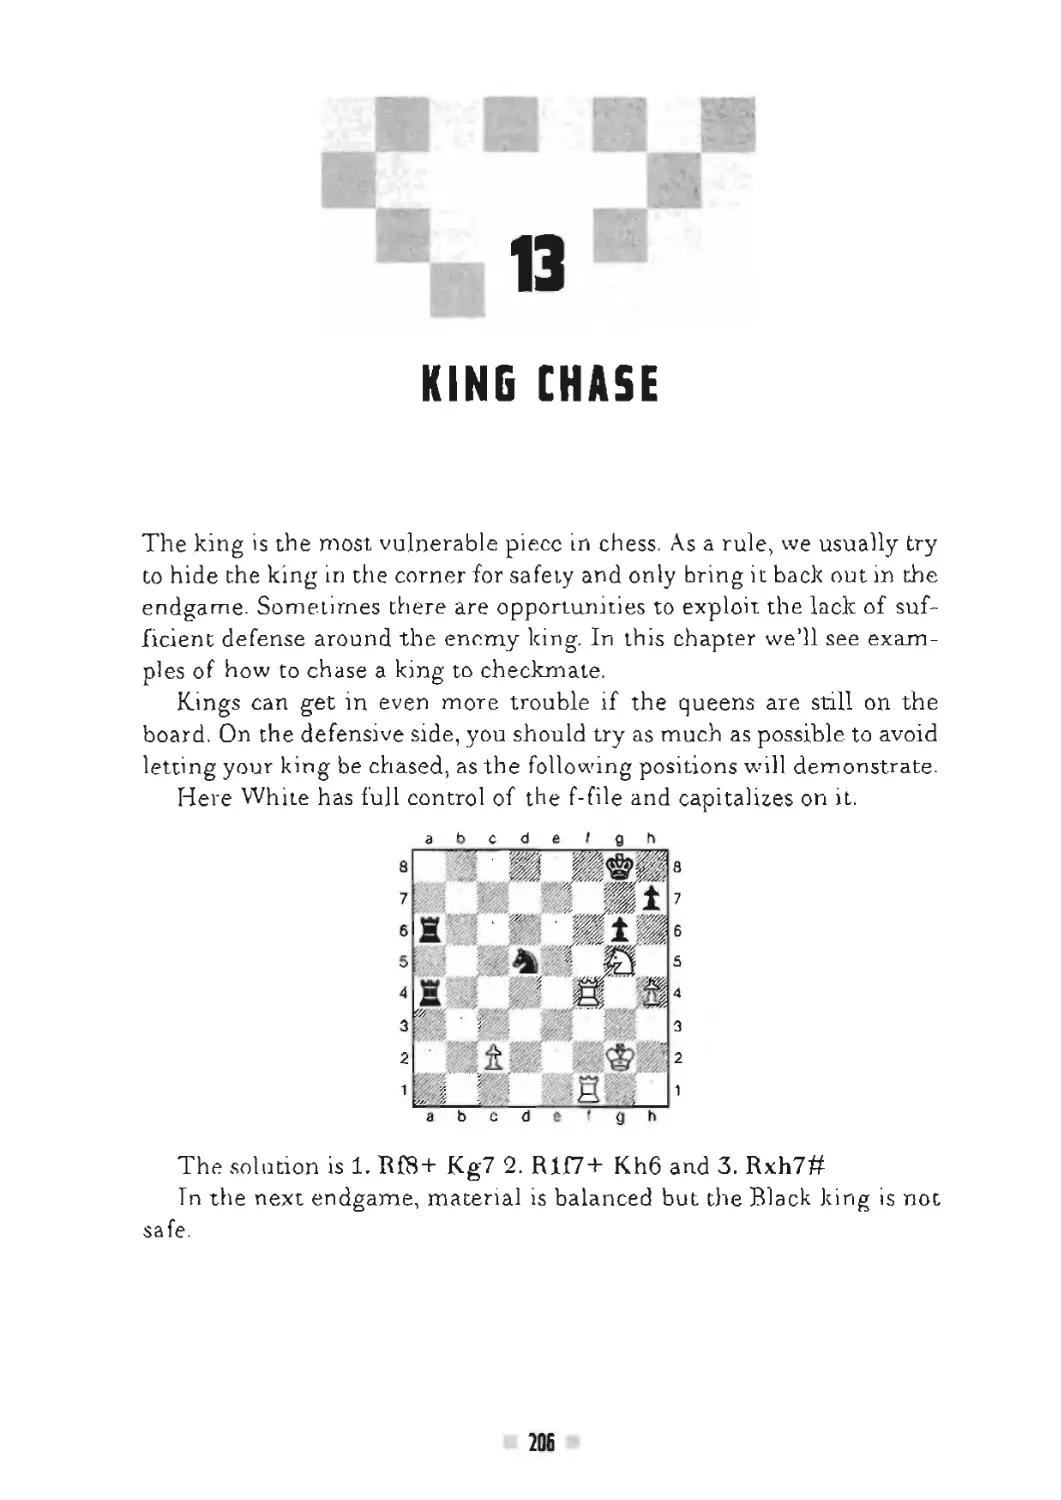 13 King chase